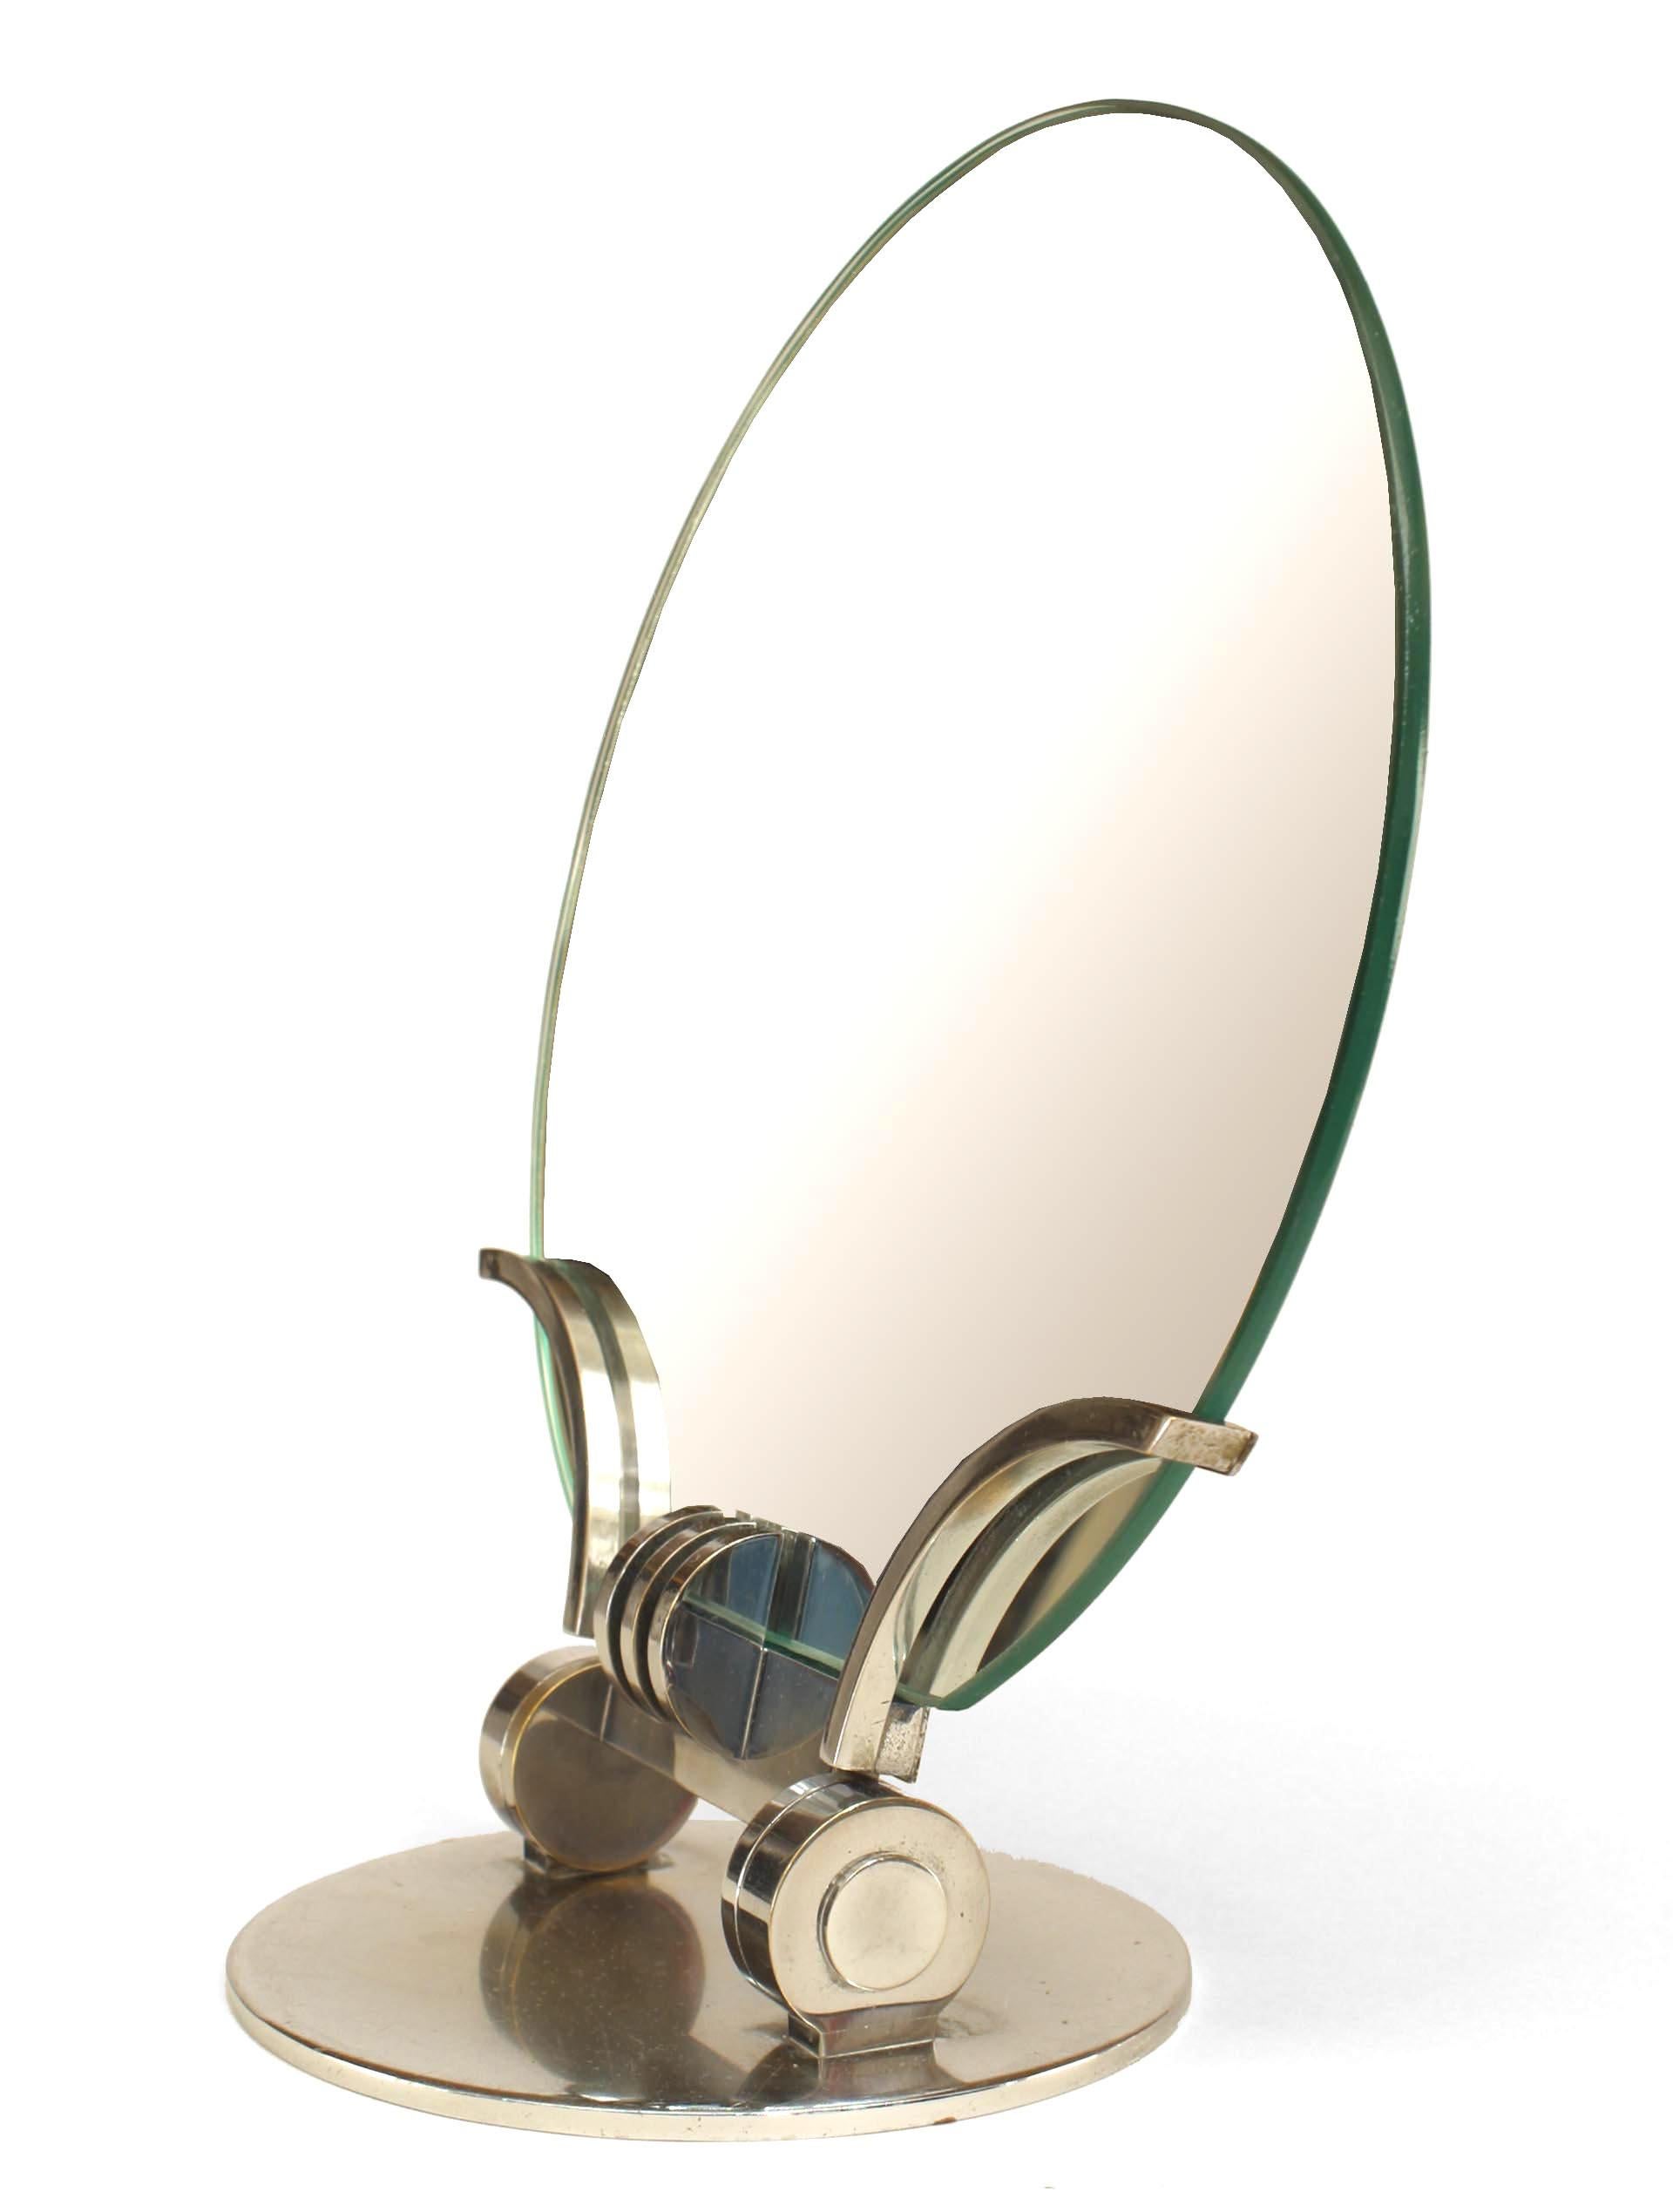 Miroir de coiffeuse Art déco français chromé caractérisé par une pièce de verre miroir ronde sans cadre positionnée au-dessus d'une base ronde chromée plus petite avec un élégant pied réglable composé du même matériau.